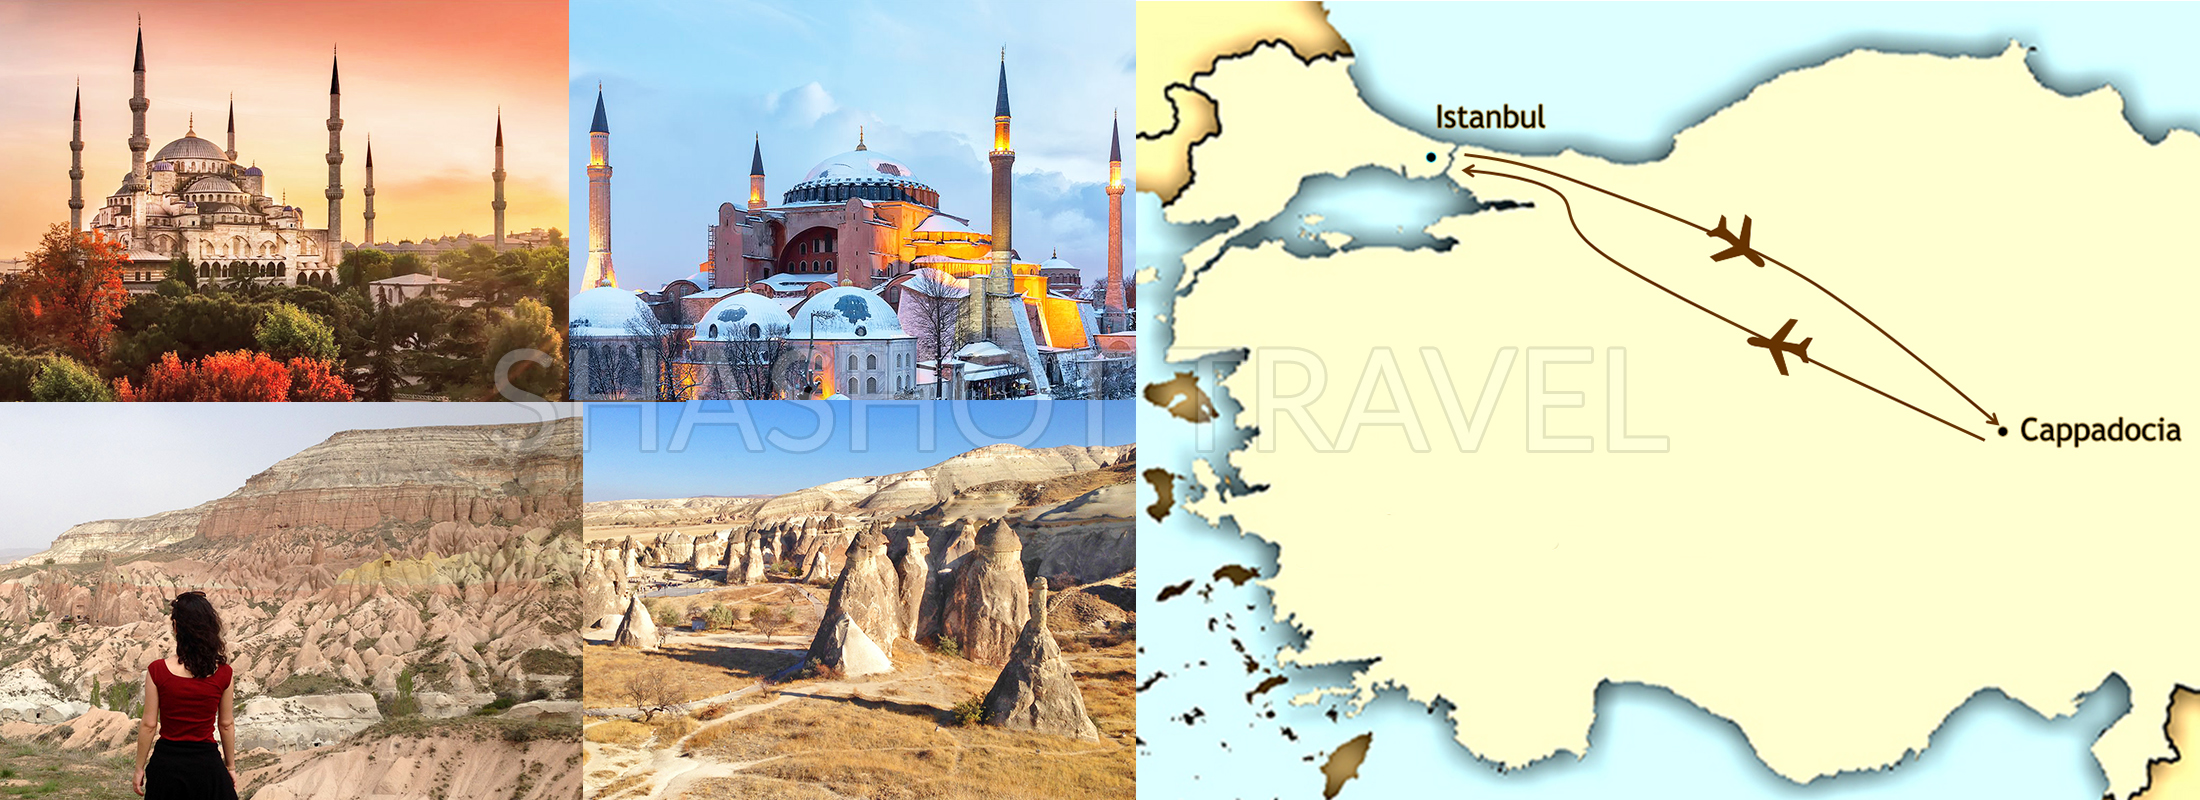 5-dias-estambul-capadocia-con-avion-shashot-travel-turkiye